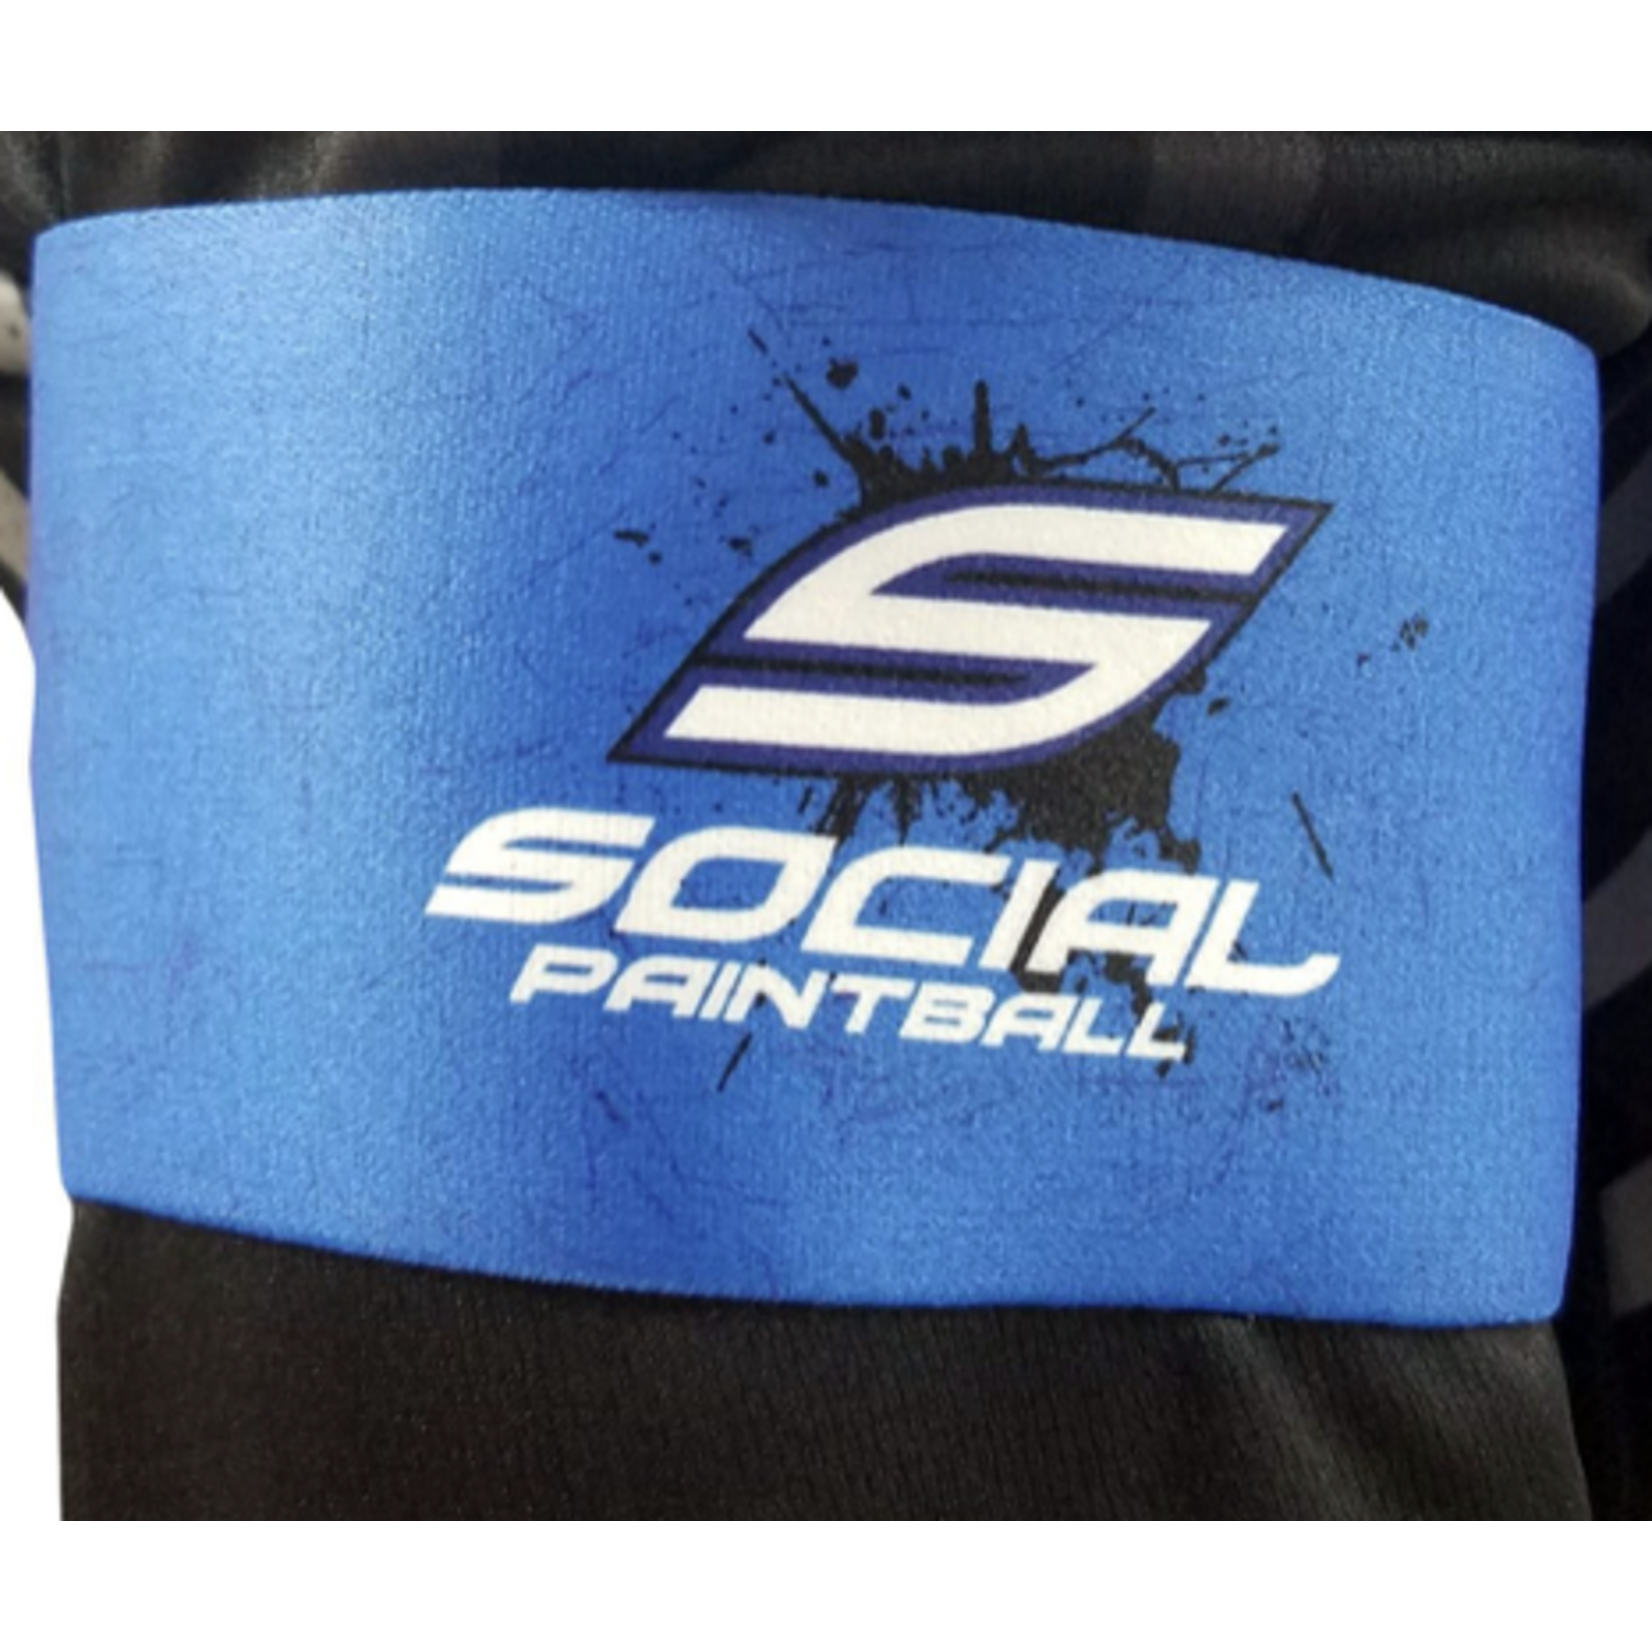 Social Paintball Social Arm band